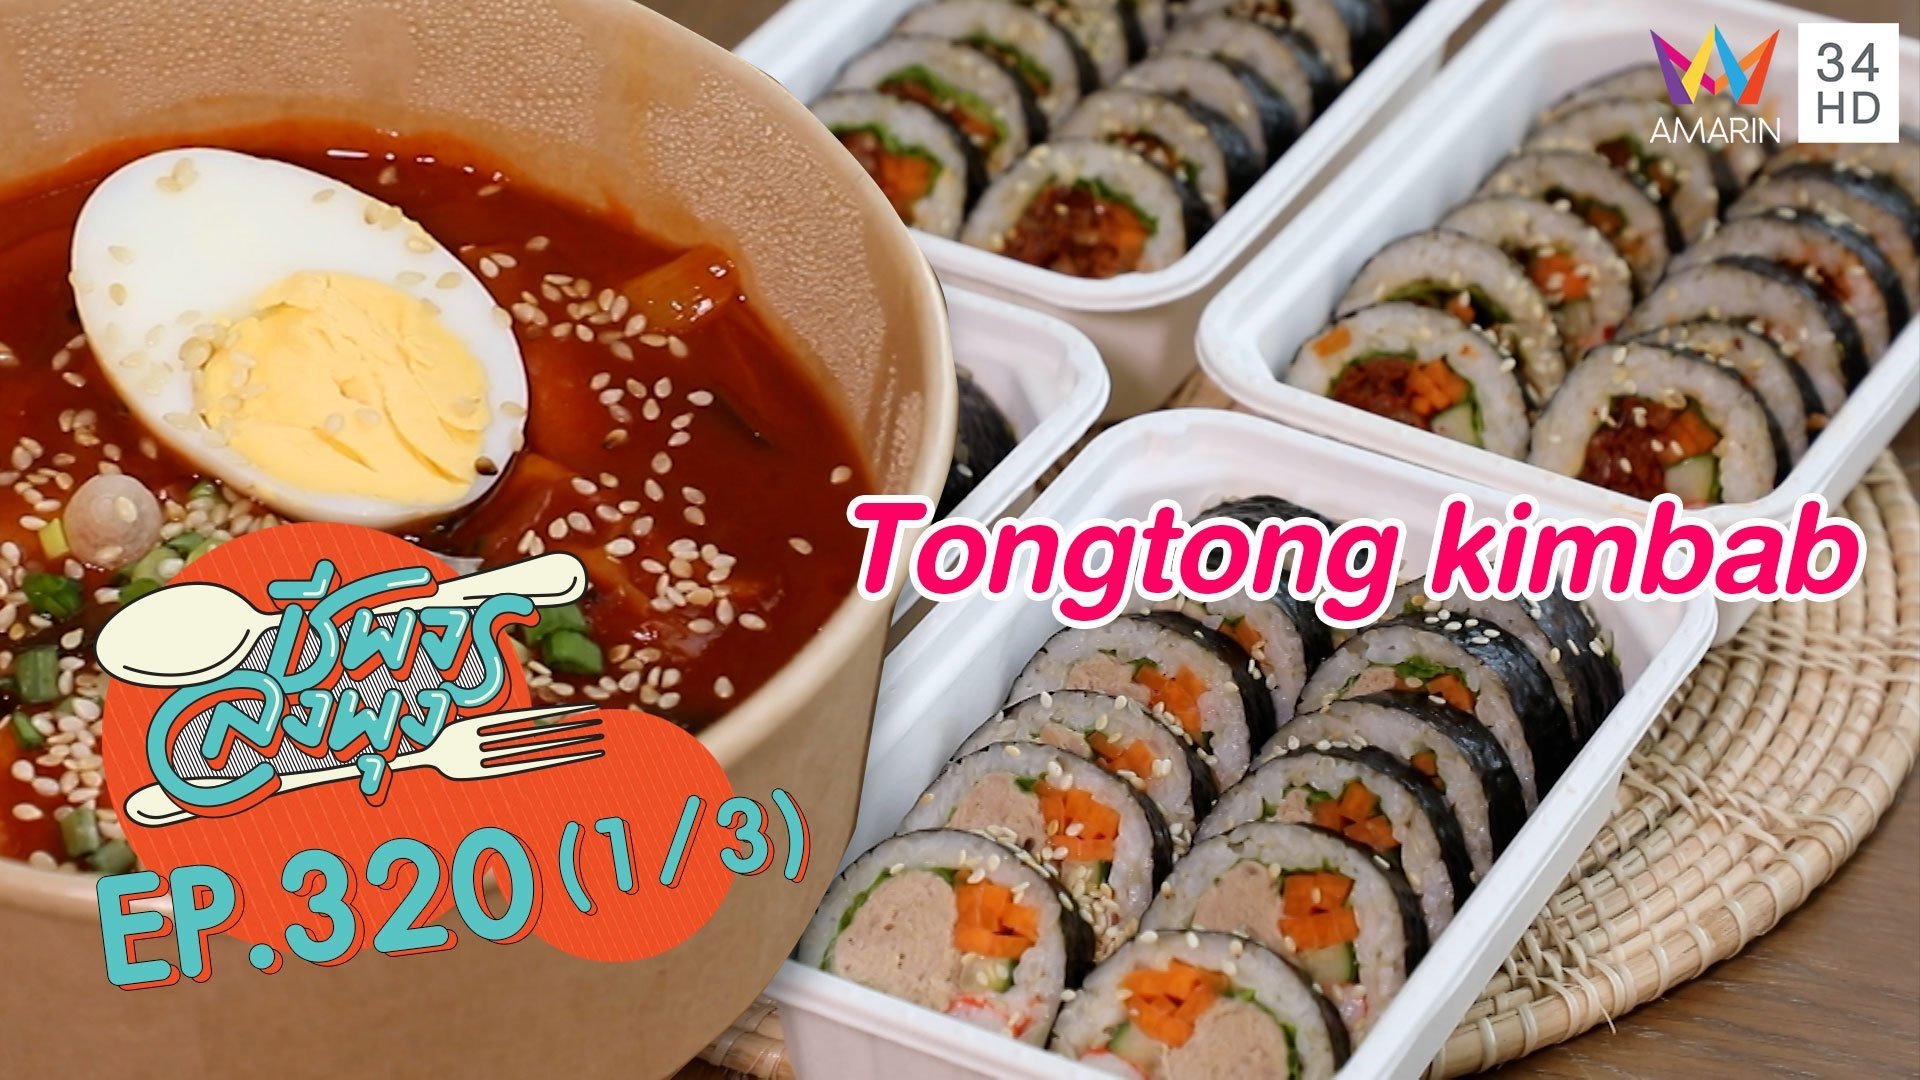 อาหารเกาหลีรสชาติสุดปัง @ร้าน Tongtong kimbab | ชีพจรลงพุง | 29 ส.ค. 64 (1/3) | AMARIN TVHD34